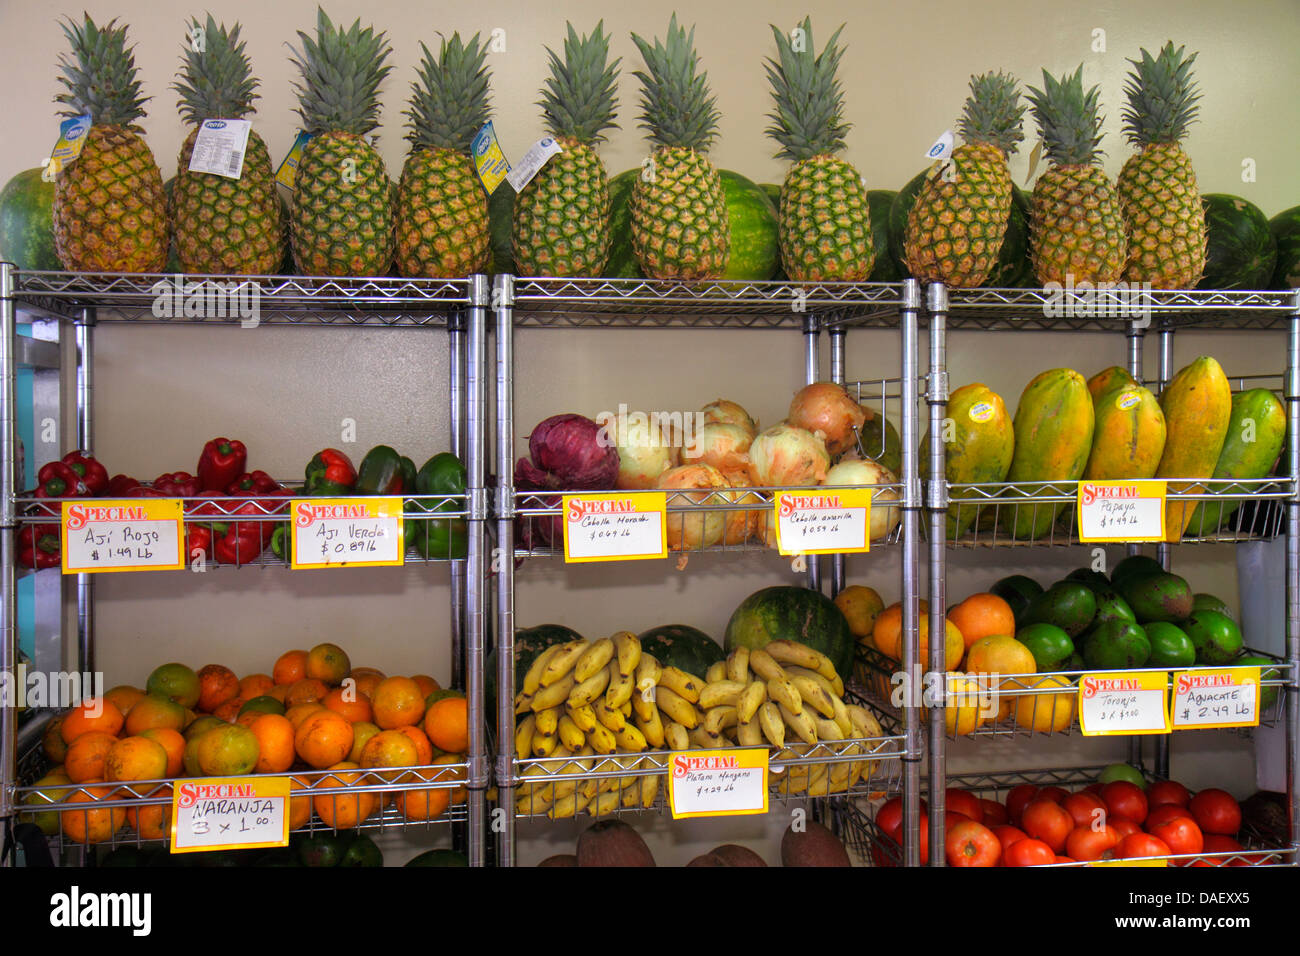 Miami Florida,El Palacio De Los Jugos,tropical fruit,sale,pineapples,peppers,papayas,onions,oranges,bananas,display sale FL130601050 Stock Photo